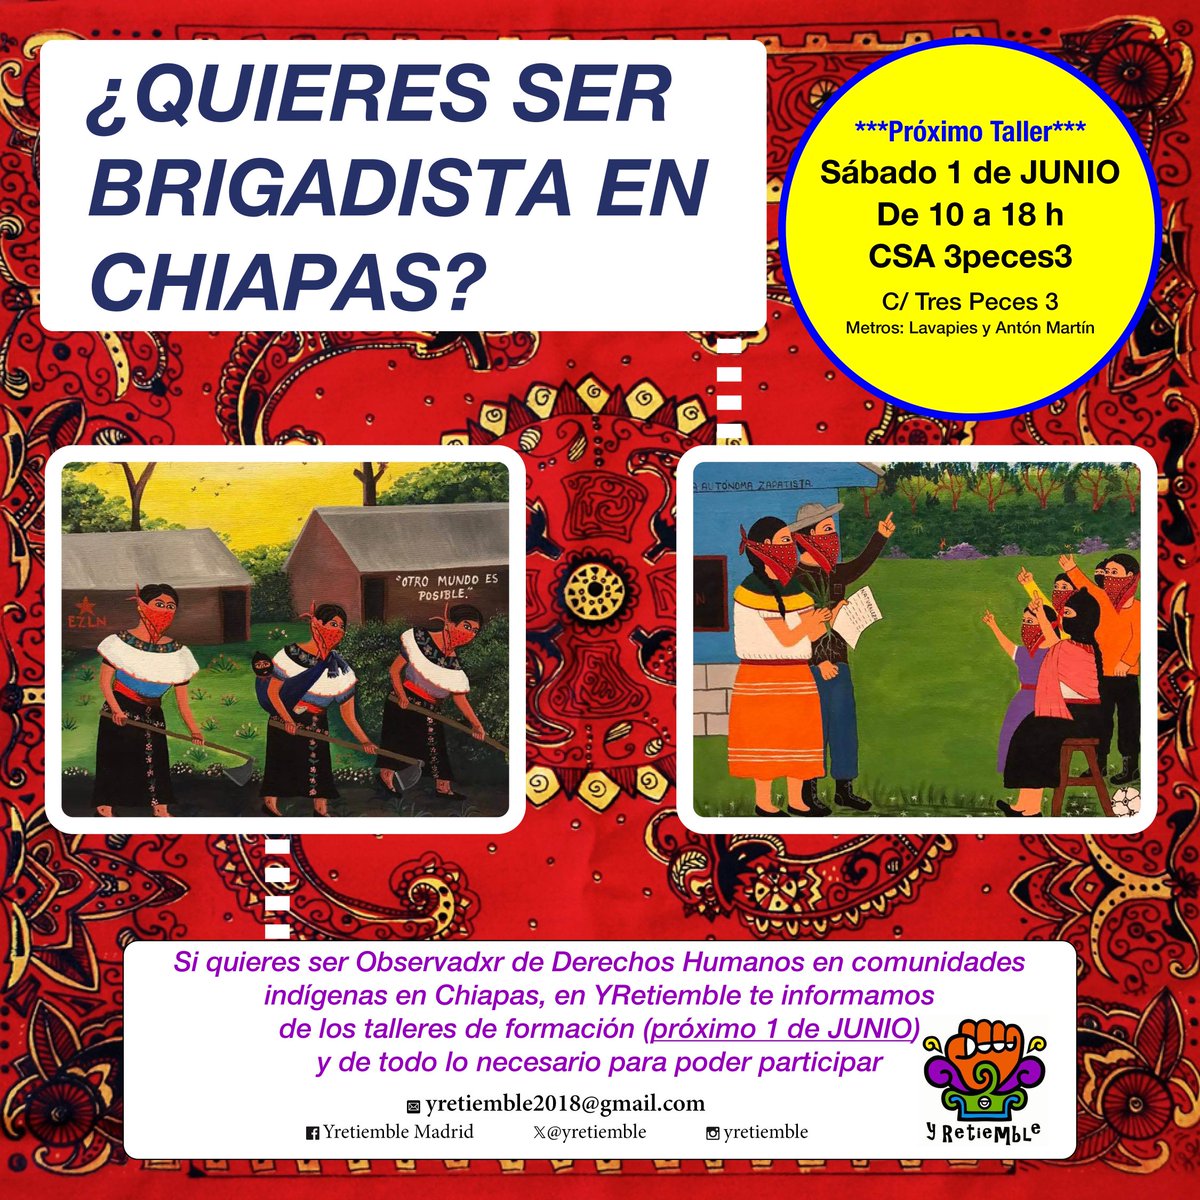 ¿Quieres apoyar a las comunidades indígenas como ‘Brigadista’ en Chiapas? 🎒Próxima formación en Madrid Sábado 1º de junio, 10h, CSA 3 peces 3 ¡Apúntate! Las comunidades necesitan apoyo 📩Informes: yretiemble2018@gmail.com